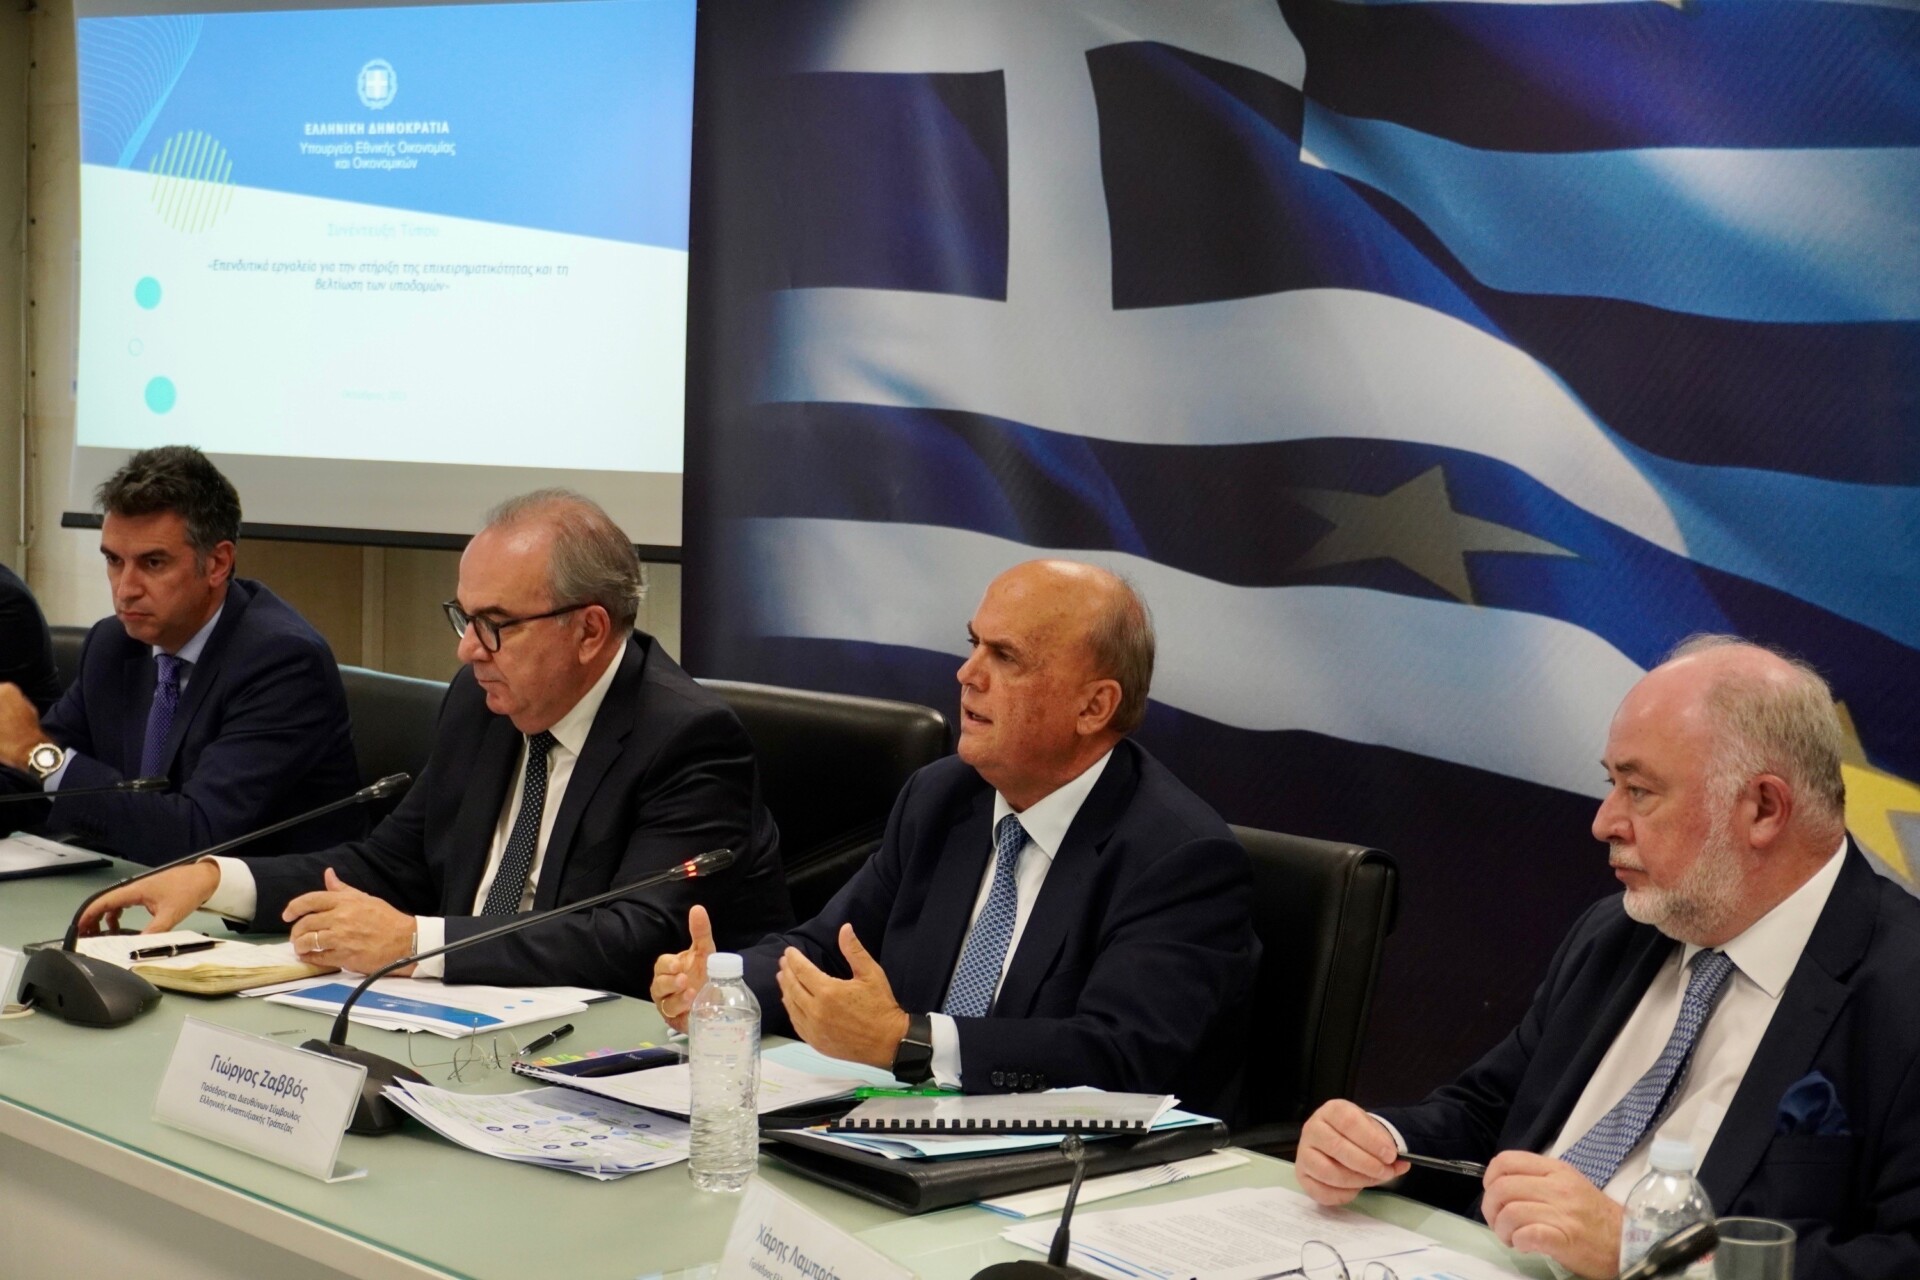 Ο πρόεδρος και Διευθύνων Σύμβουλος της Ελληνικής Αναπτυξιακής Τράπεζας-HDB, Γιώργος Ζαββός στη συνέντευξη που παρέθεσε ο Αναπληρωτής Υπουργός Εθνικής Οικονομίας και Οικονομικών, Νίκος Παπαθανάσης.@ΔΤ